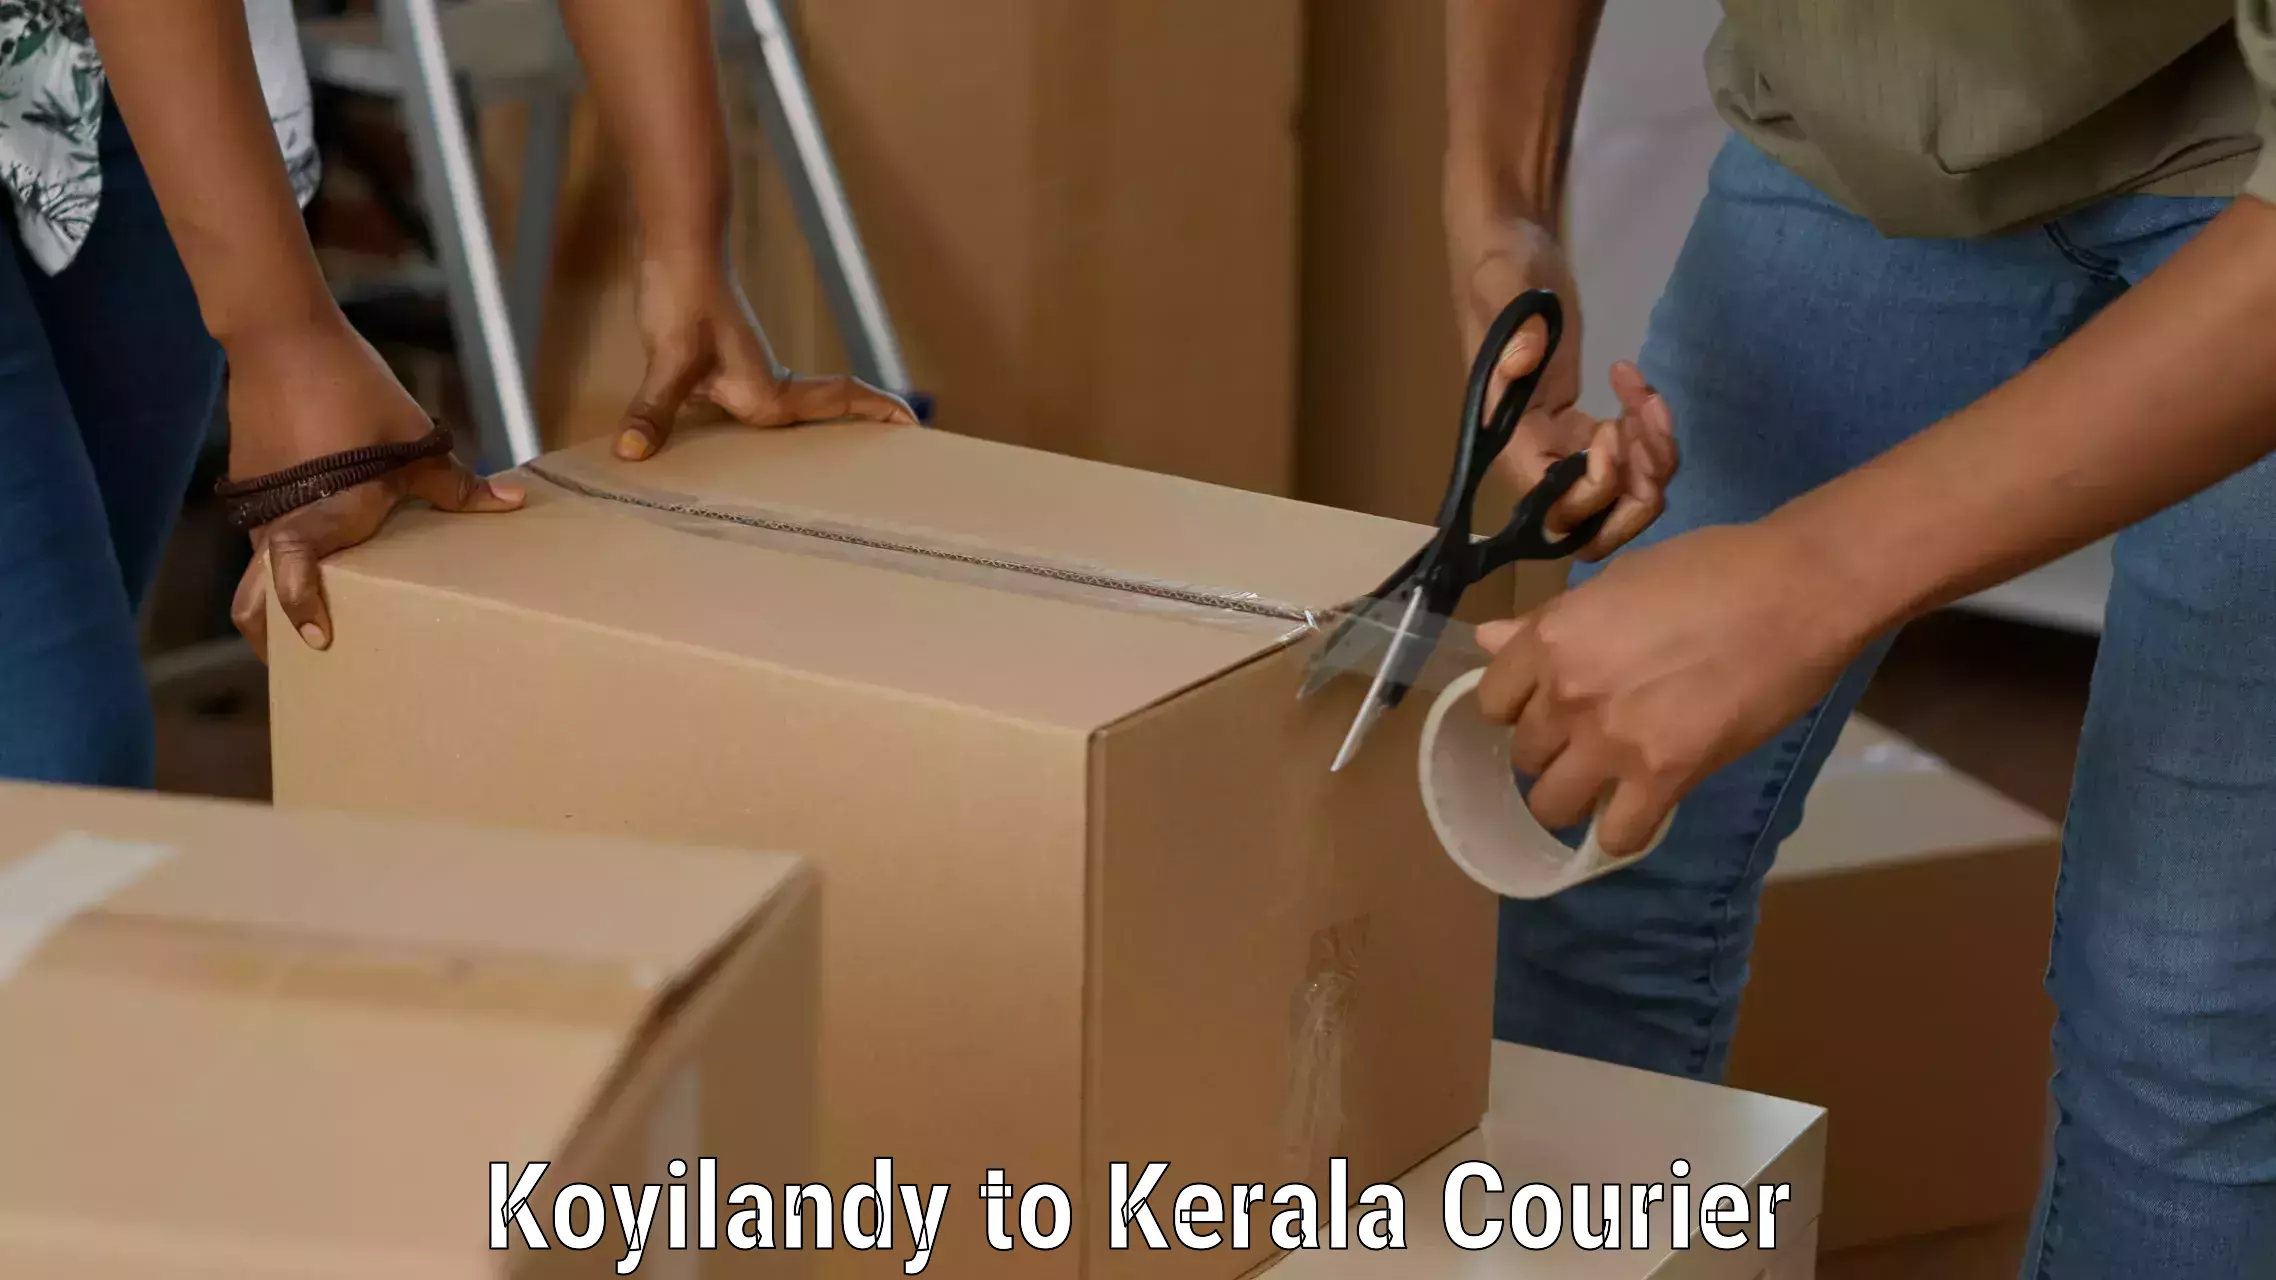 Customer-centric shipping in Koyilandy to Thachanattukara